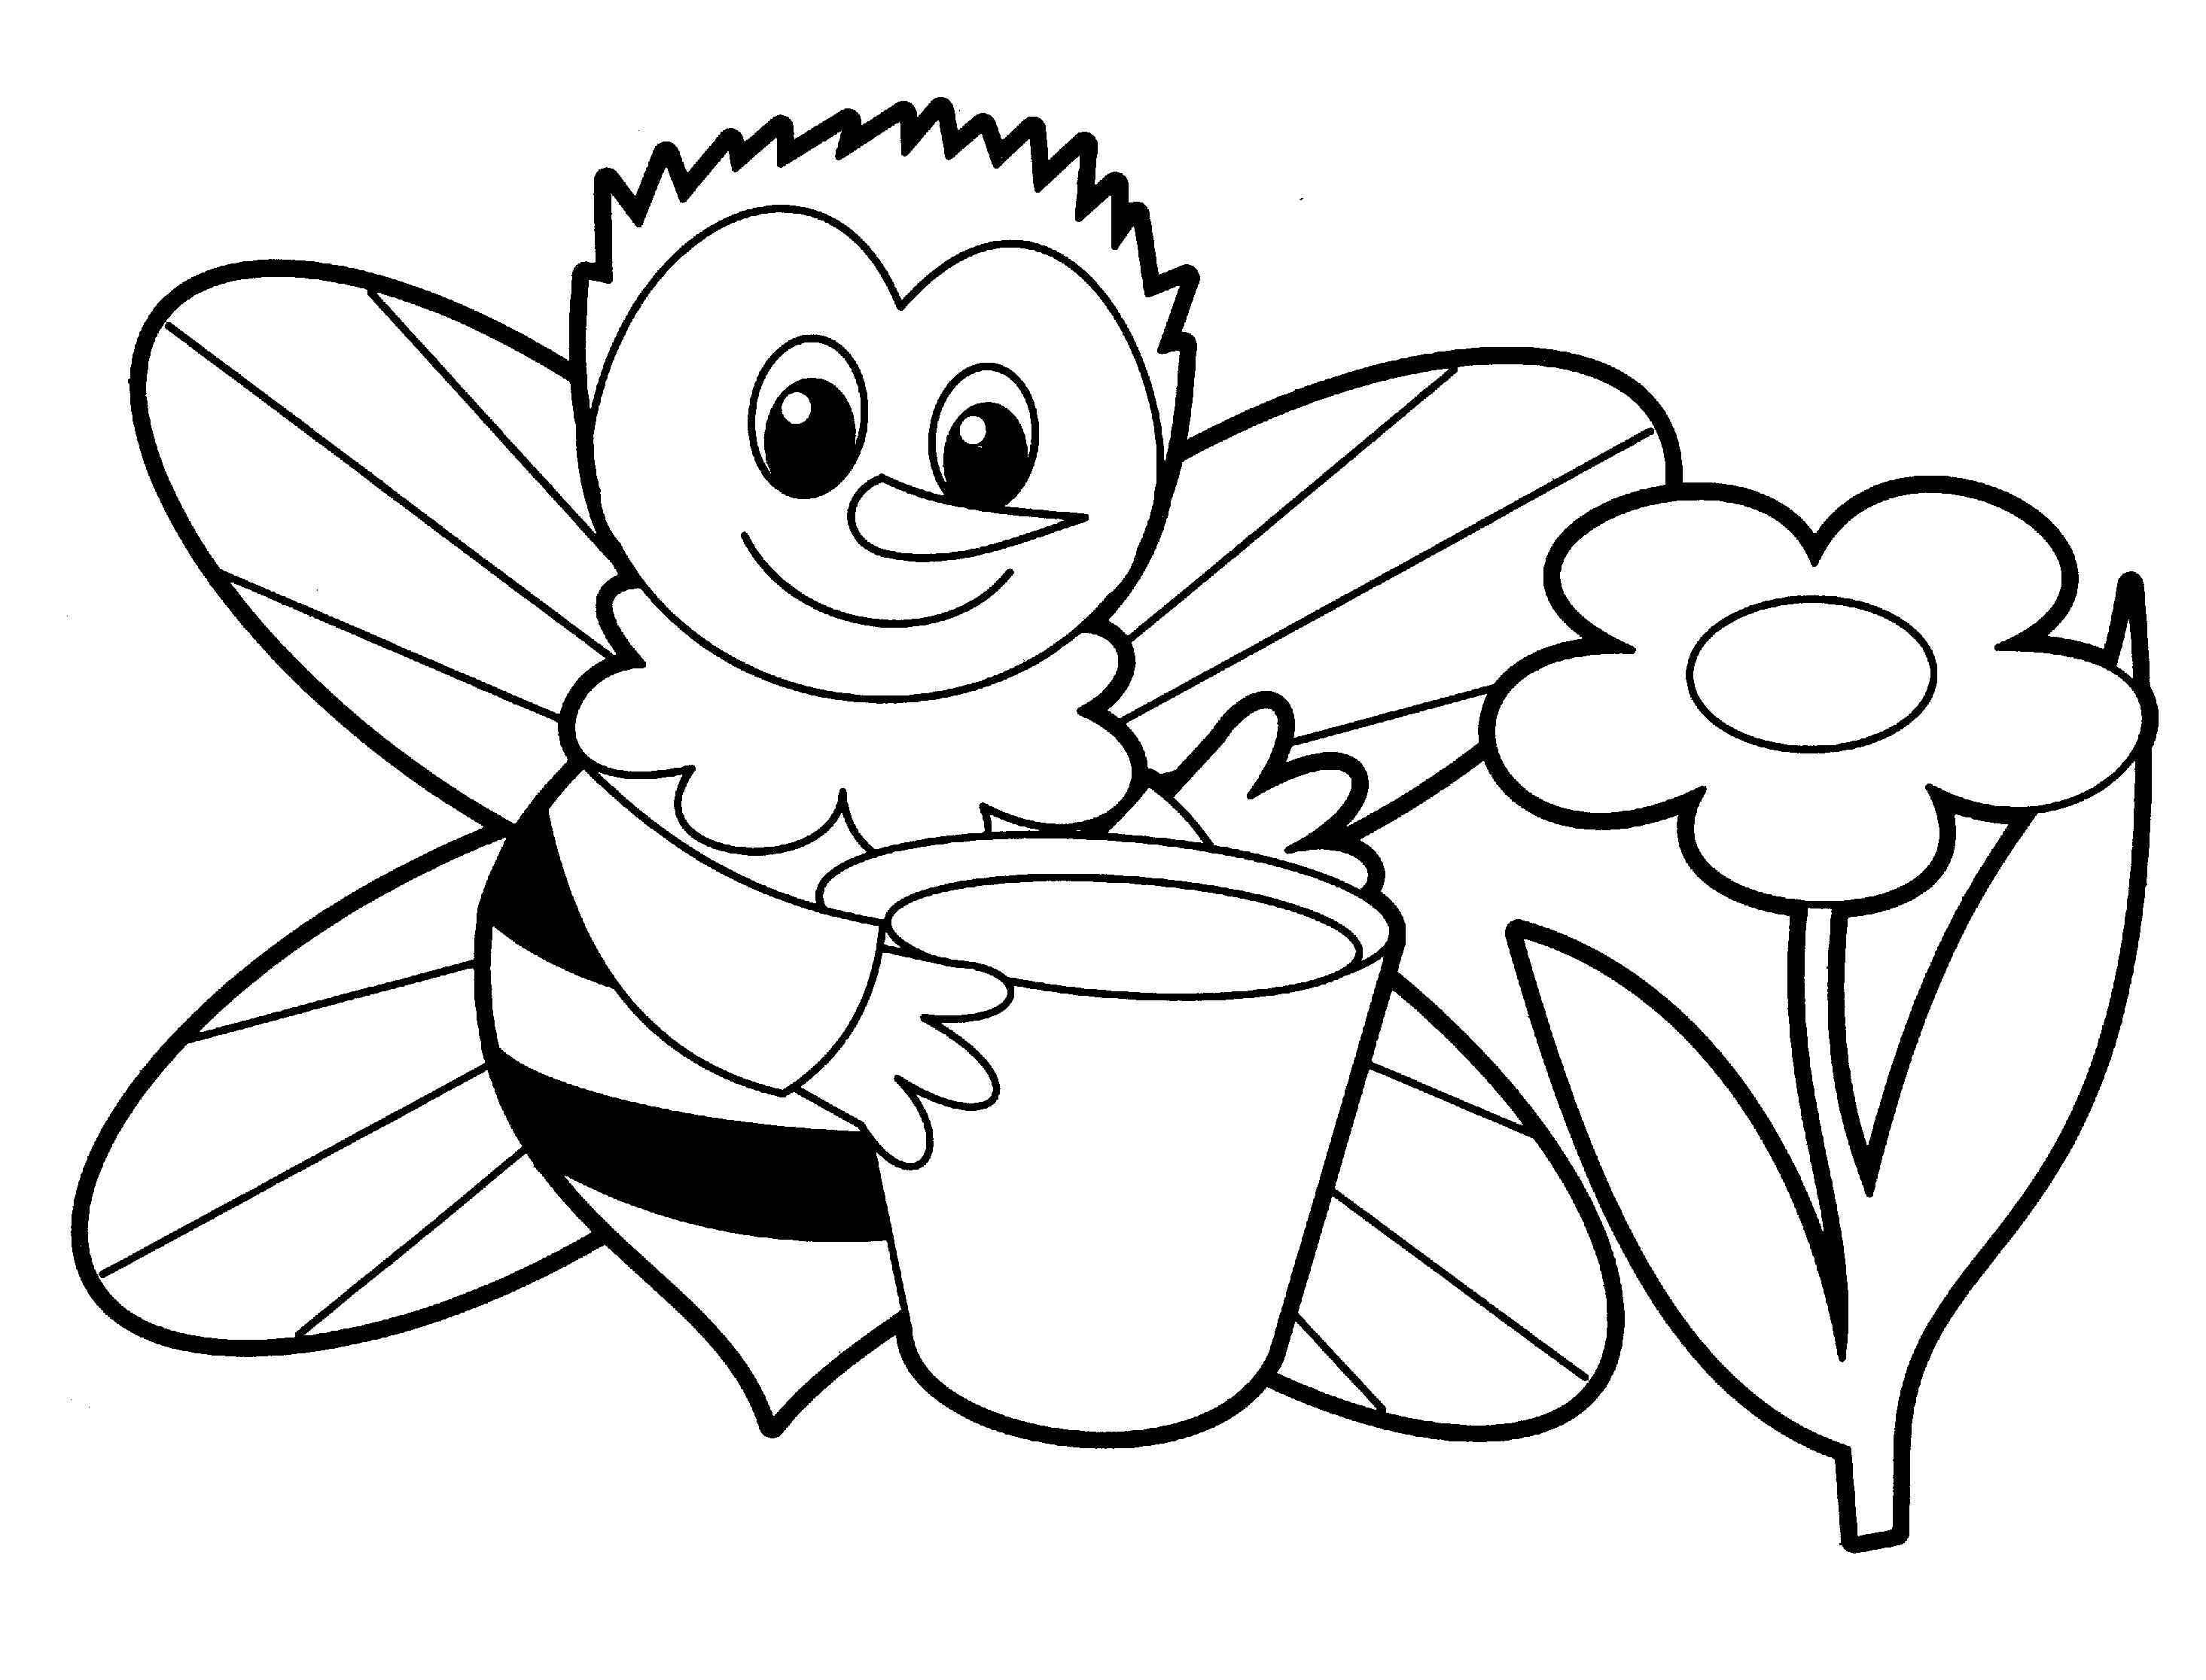 Картинки для раскрашивания для детей. Раскраски для детей. Пчелка раскраска. Раскраски для дошкольников. Пчела раскраска.